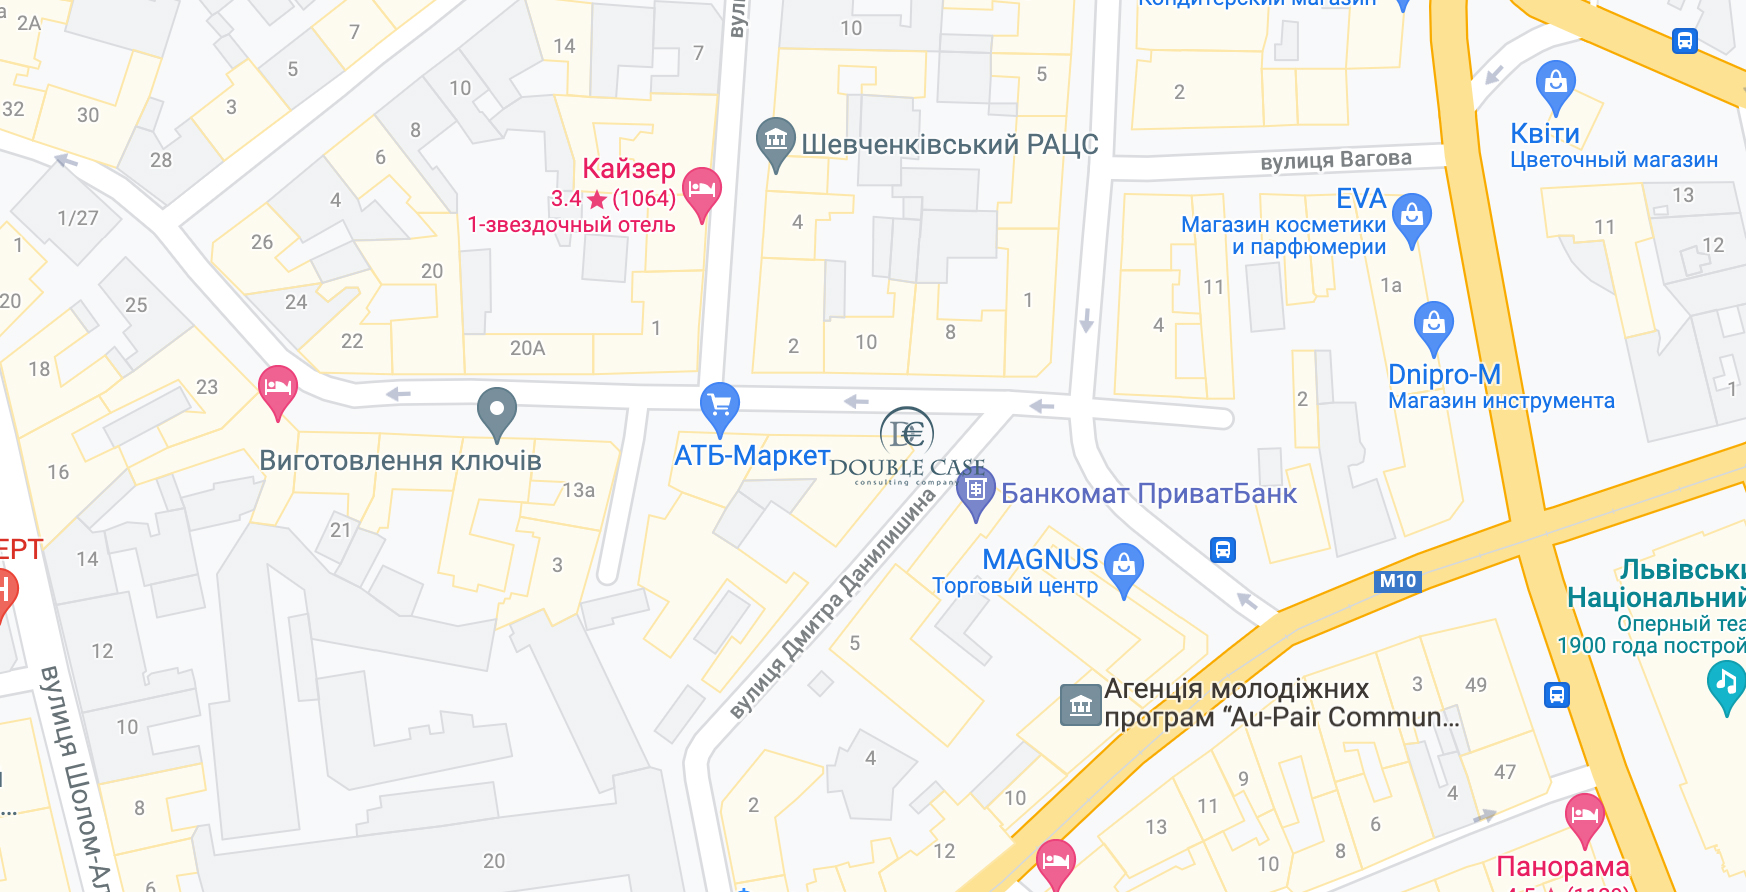 Maps Lviv Ukraine